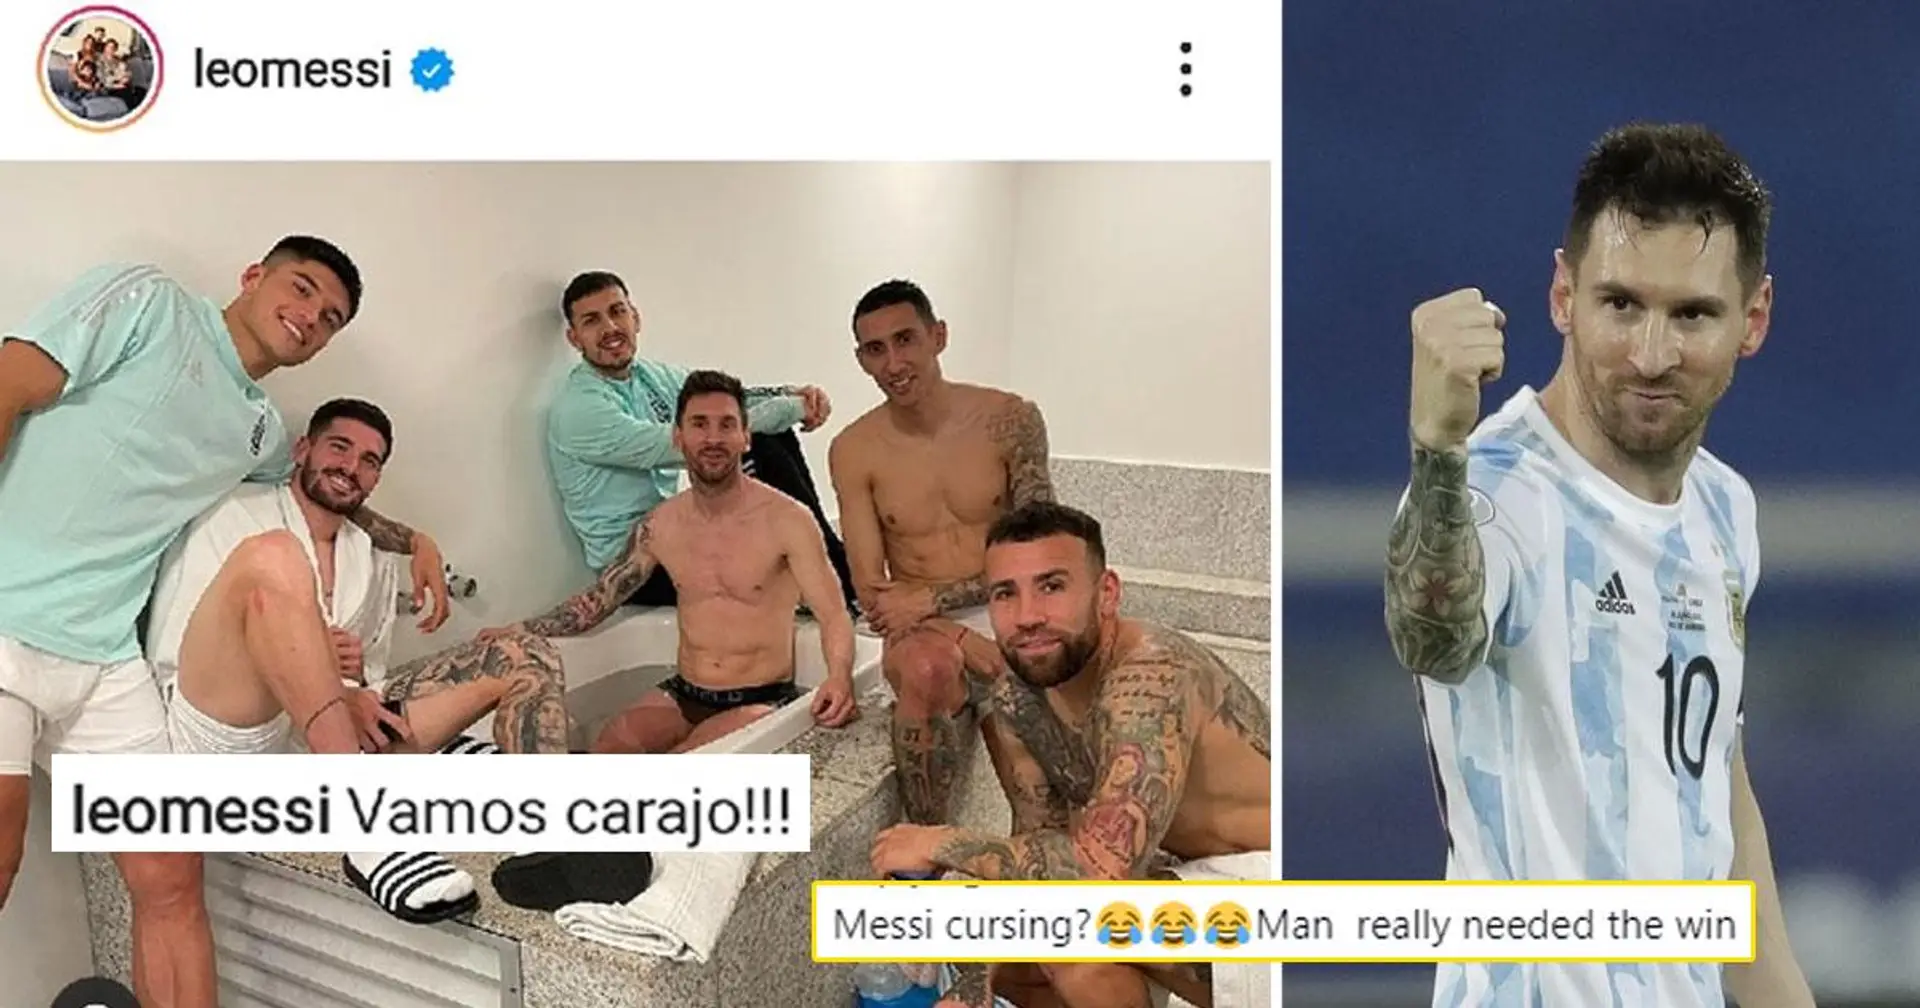 "Première fois que je le vois jurer": un fan choqué alors que Messi envoie un message puissant après une dure victoire en Uruguay